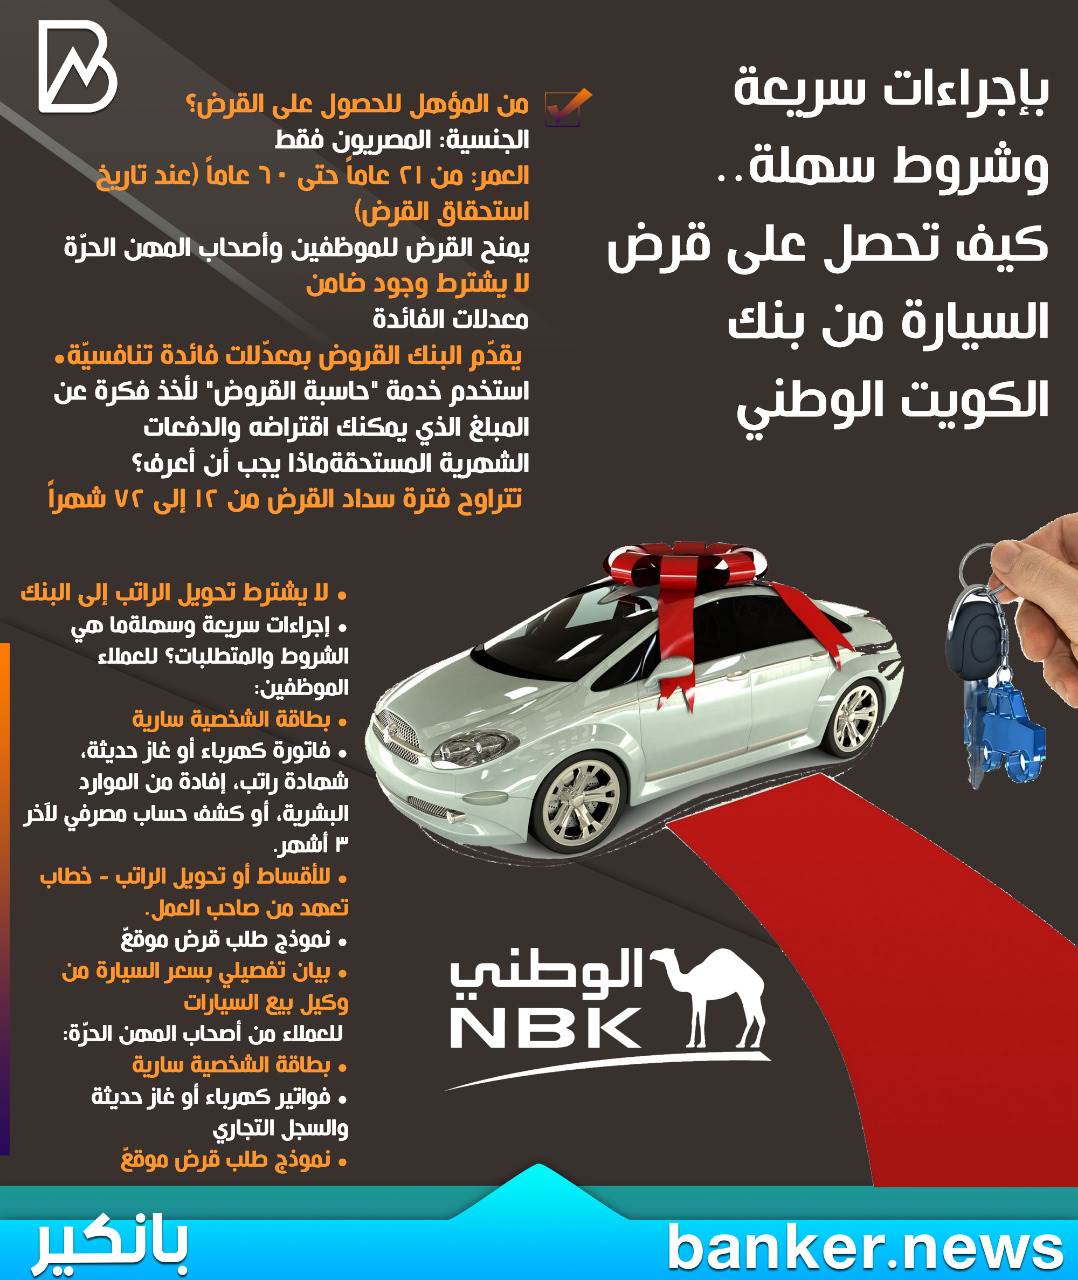 بانكير كيف تحصل على قرض السيارة من بنك الكويت الوطني بإجراءات سريعة وشروط سهلة